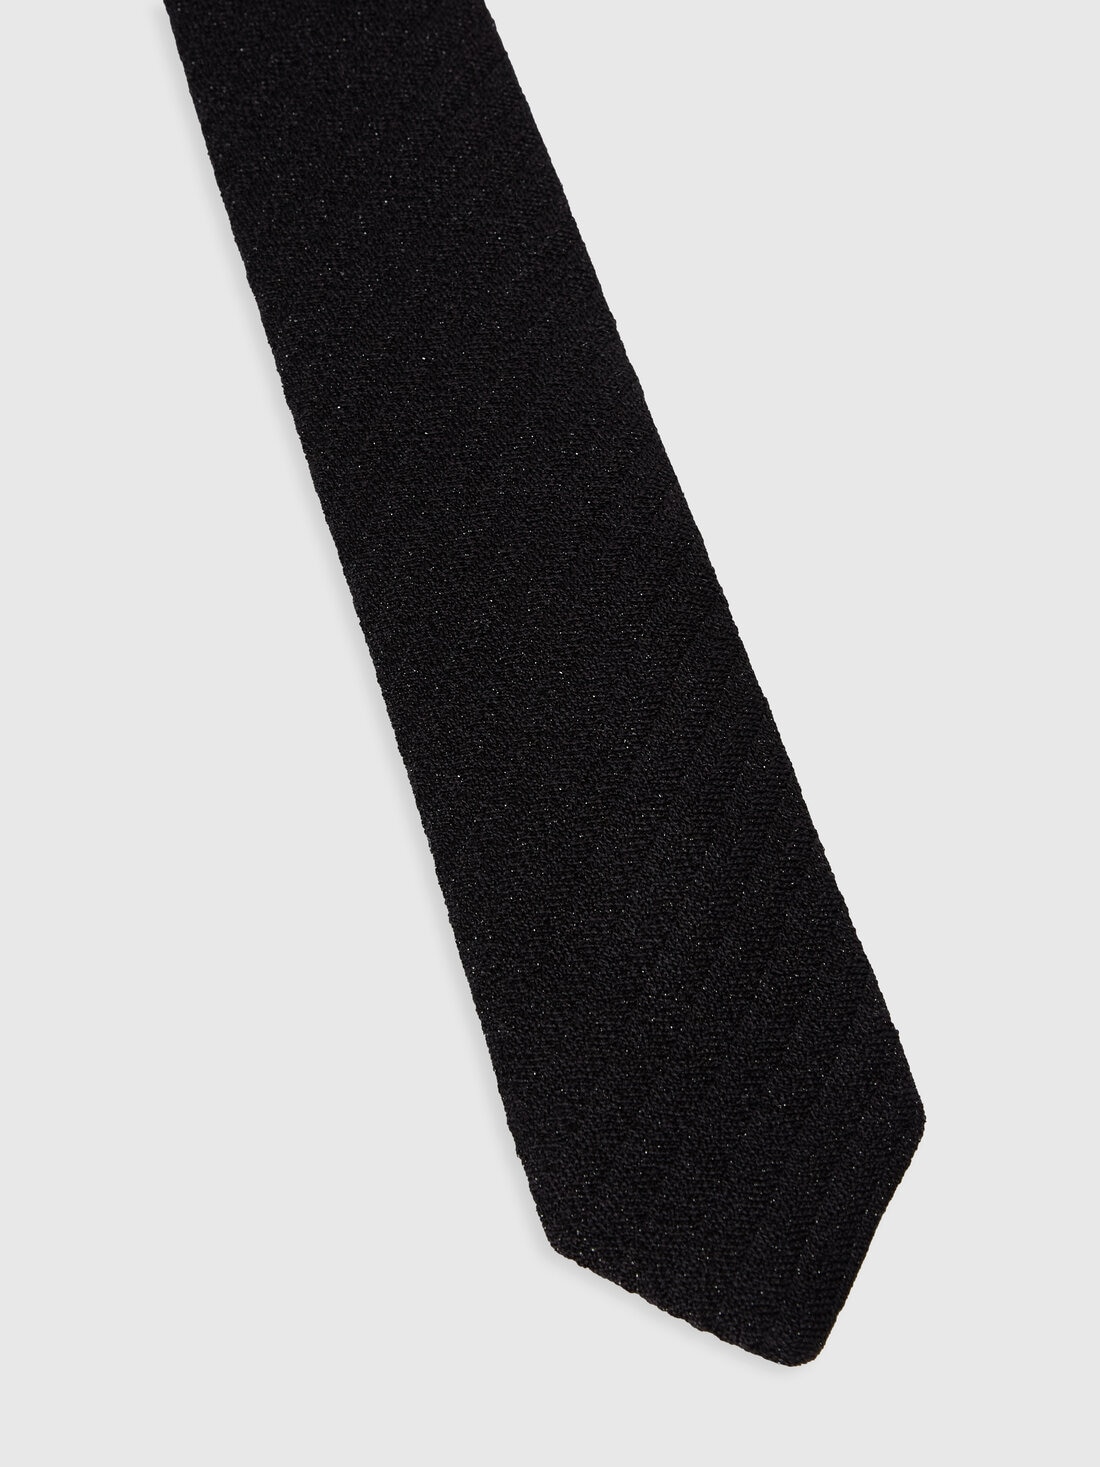 Cravatta in viscosa lamé, Multicolore  - 8053147141862 - 1